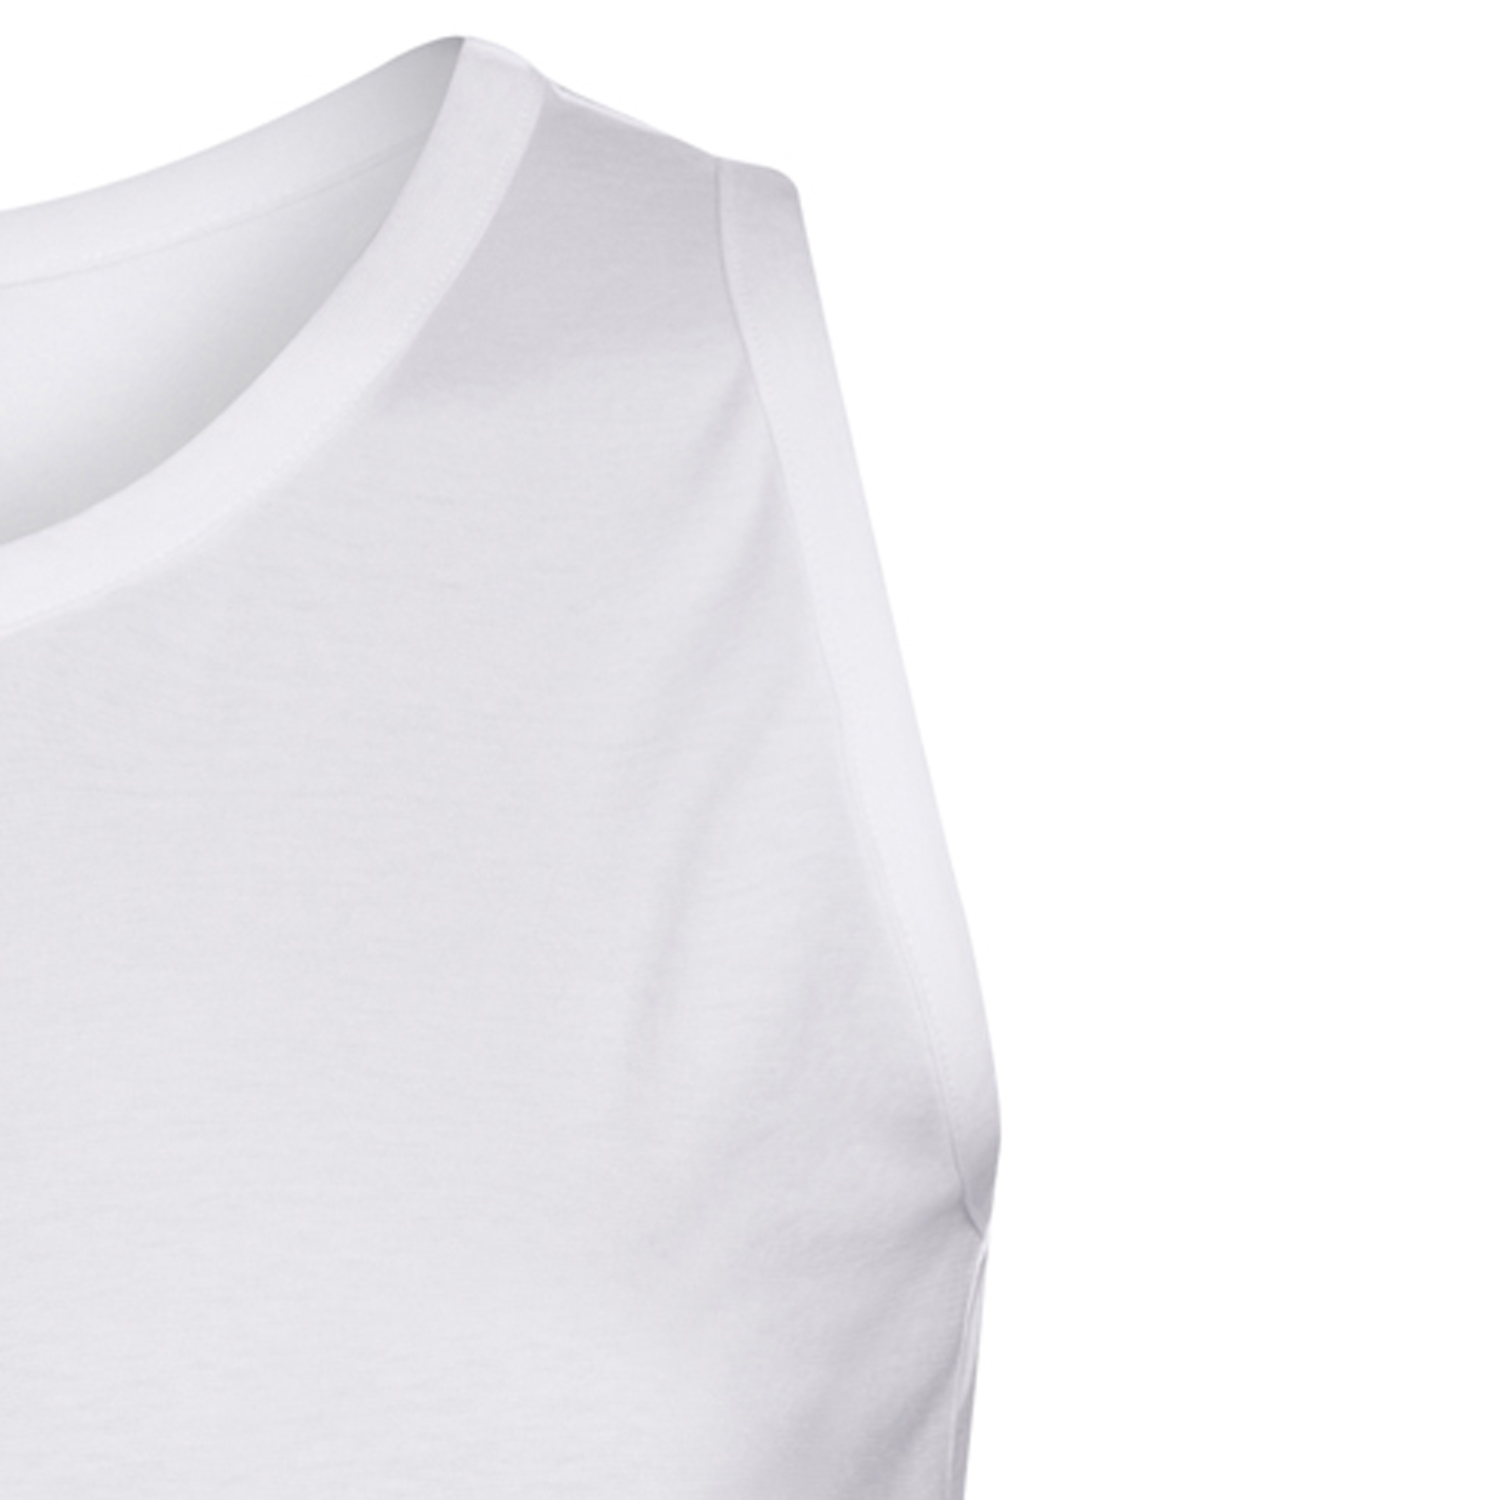 Basic Herren Rundhals Shirt ohne Arm in weiß von Ahorn Sportswear bis Übergröße 10XL